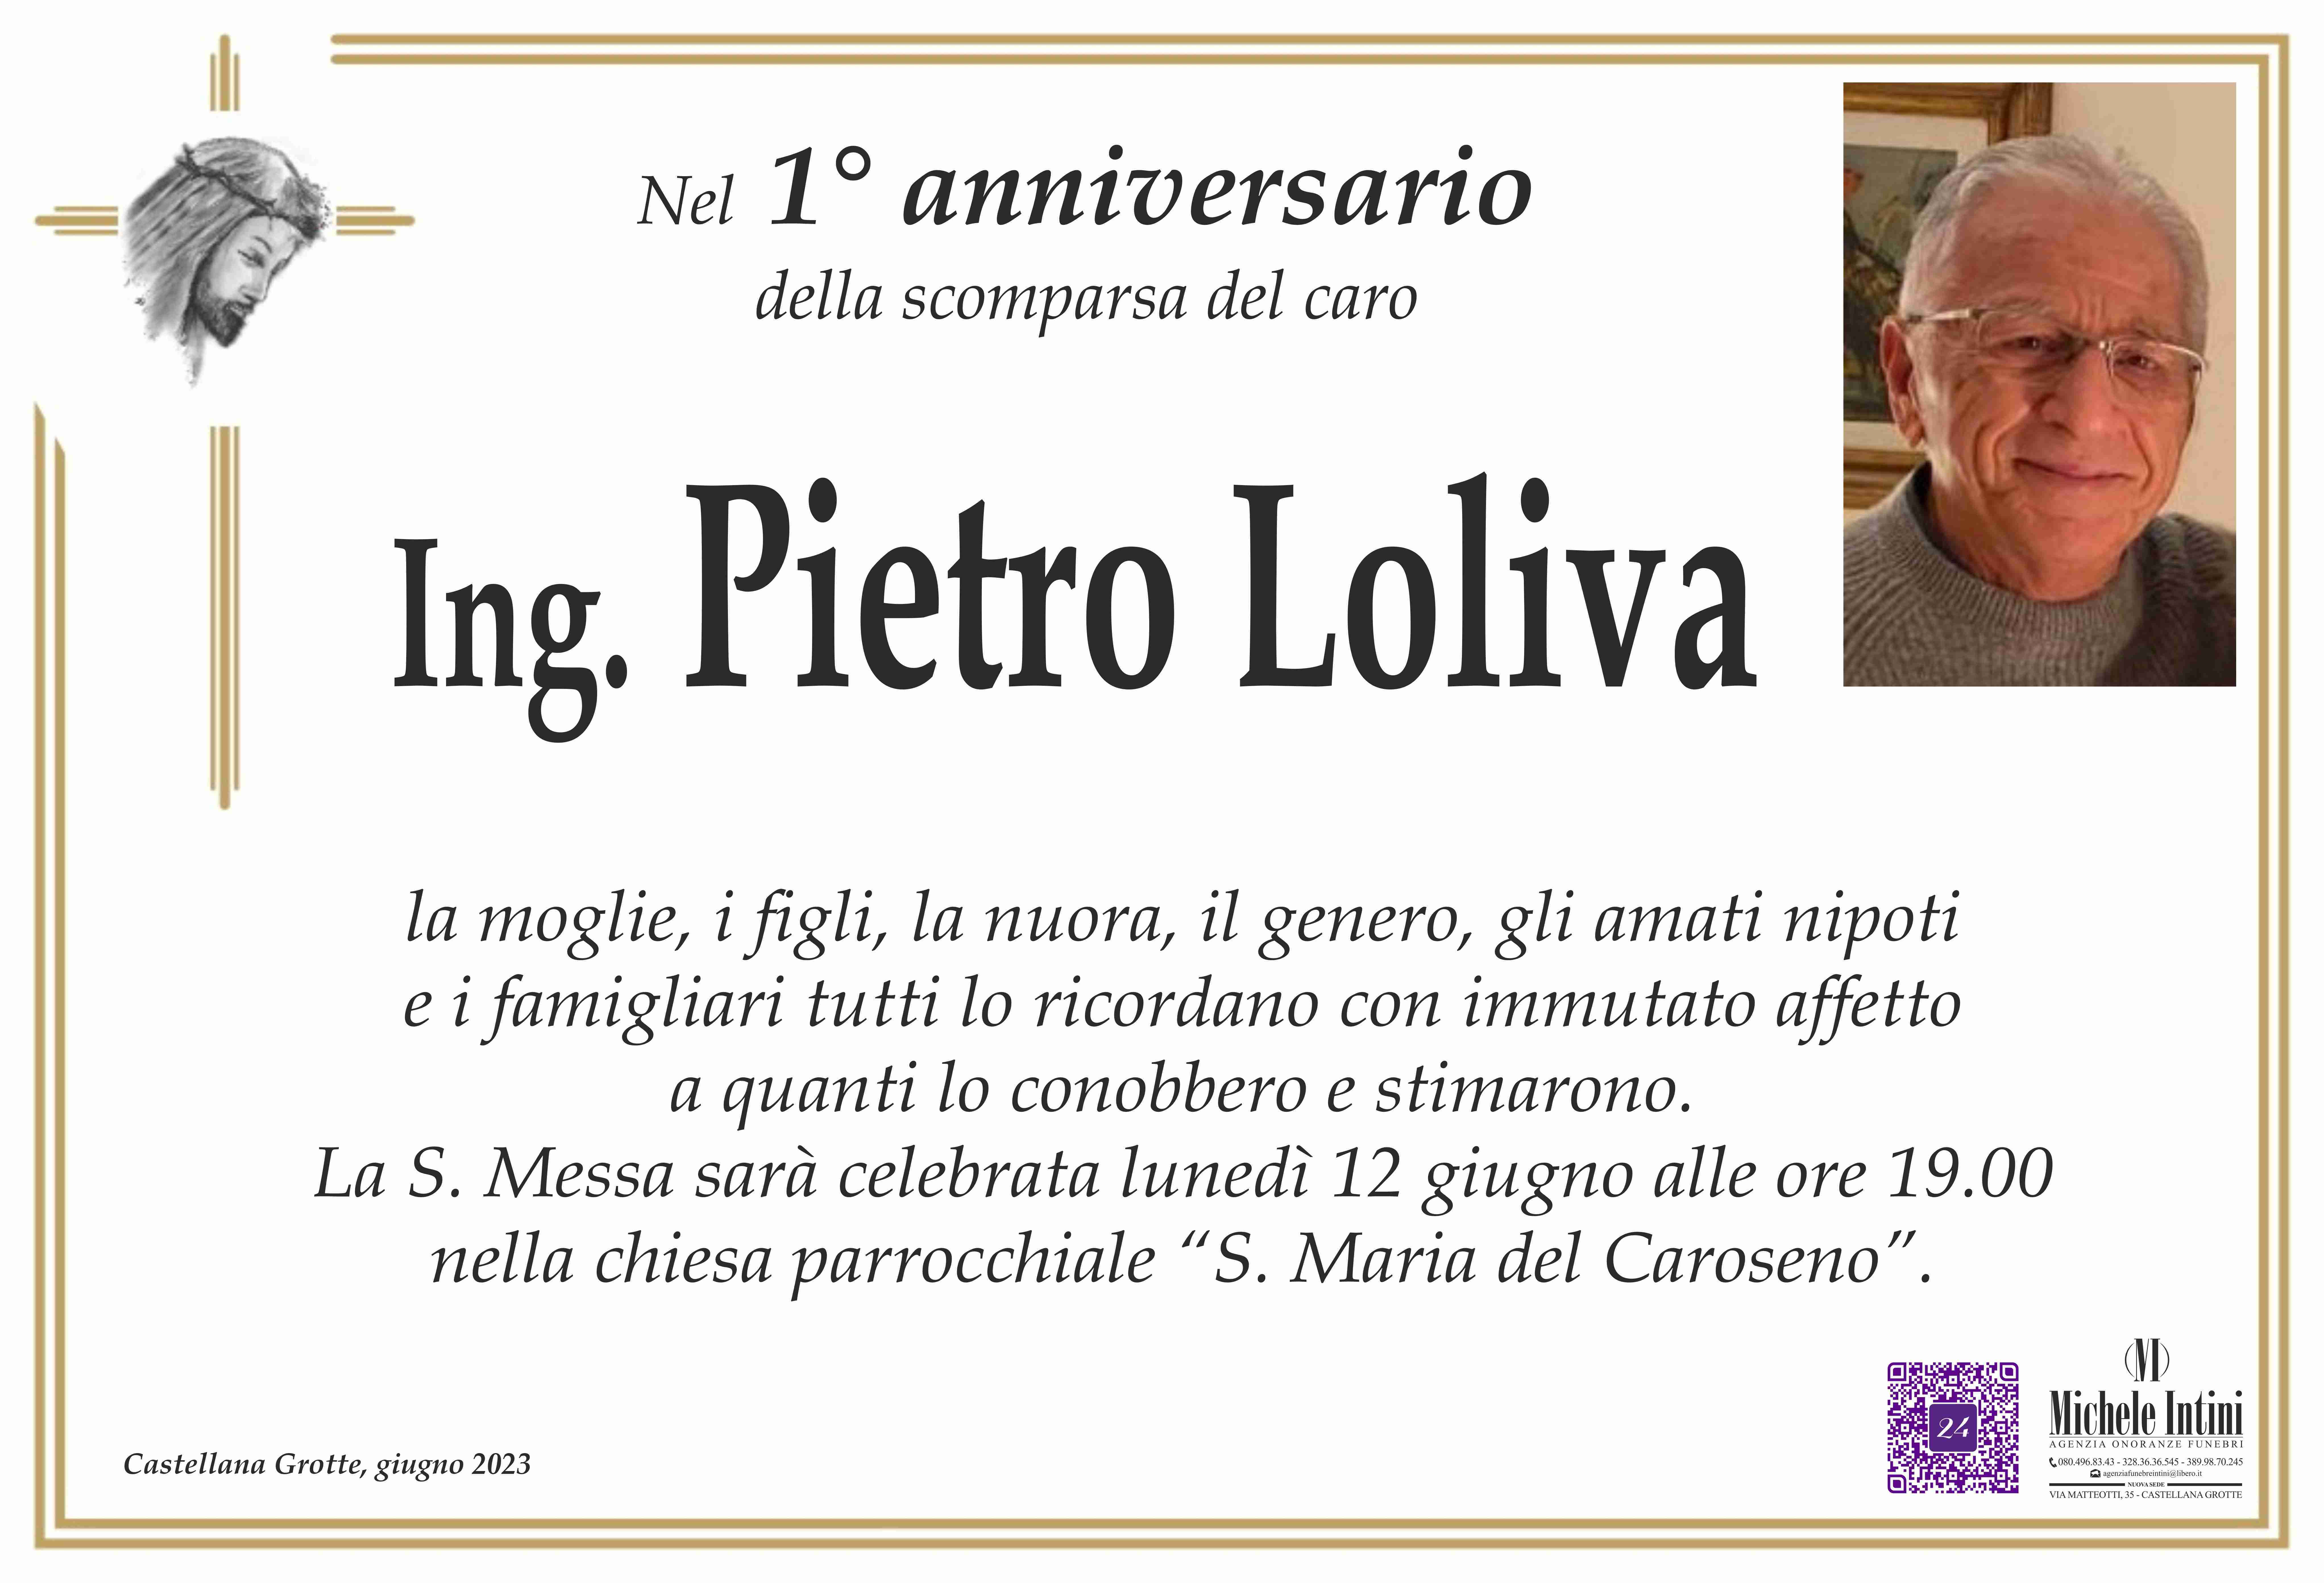 Pietro Loliva